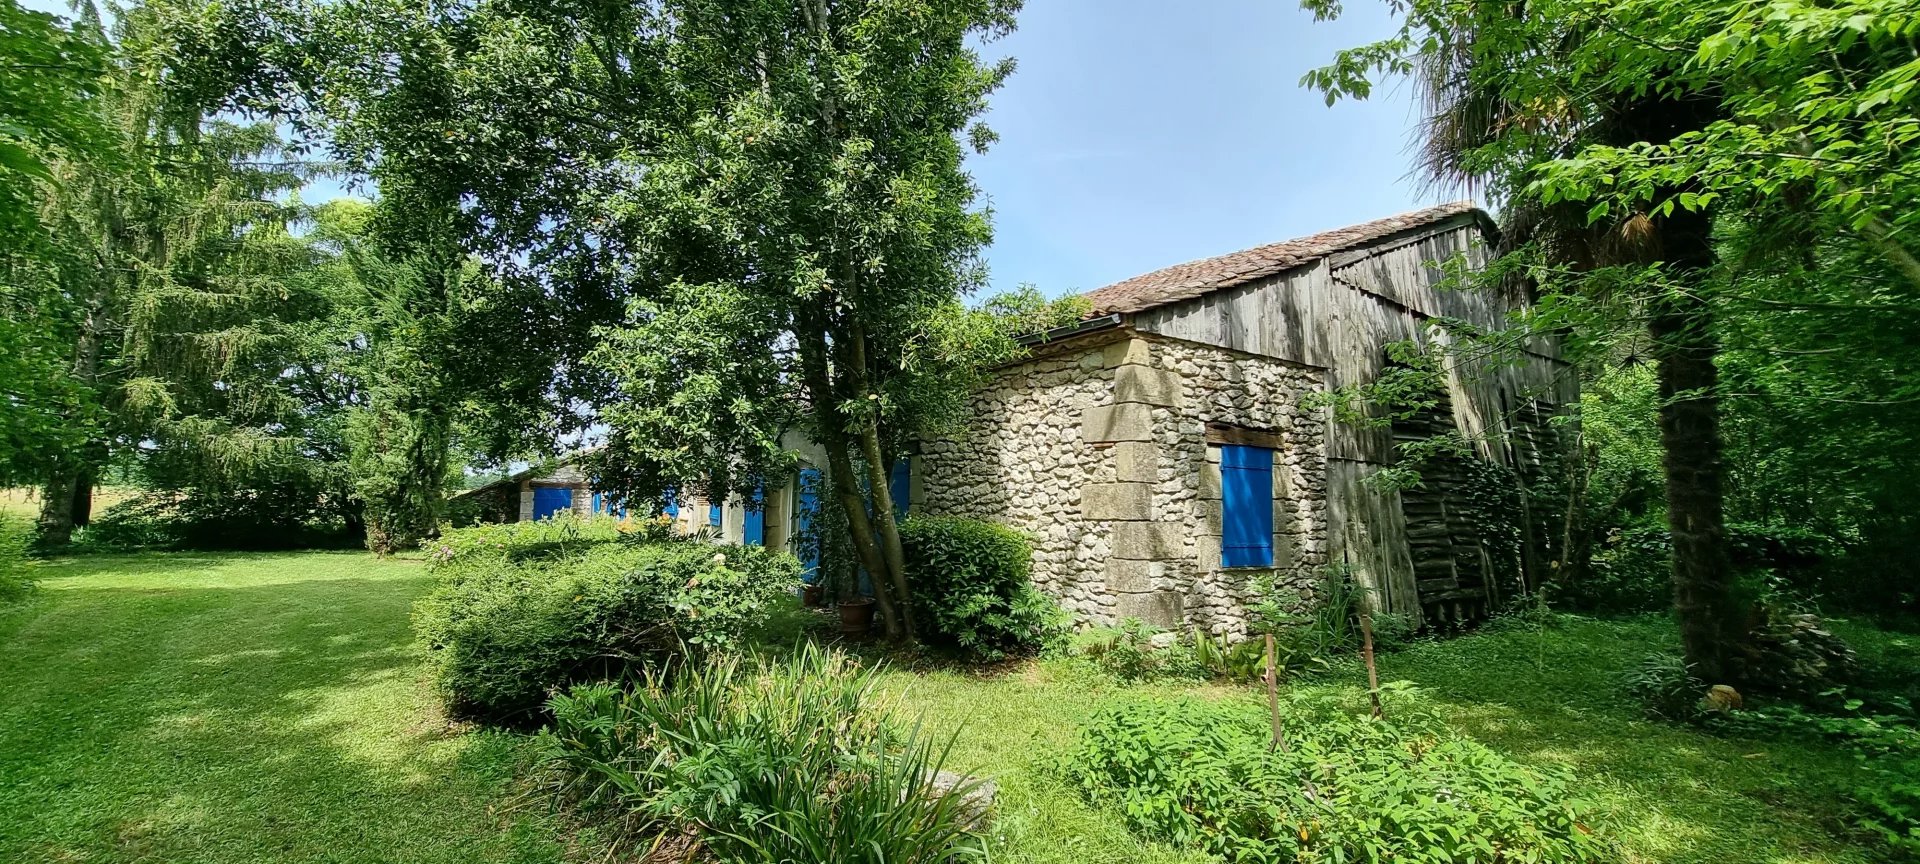 15 KMS de Bergerac  maison Périgourdine en pierres sur 6300 m²